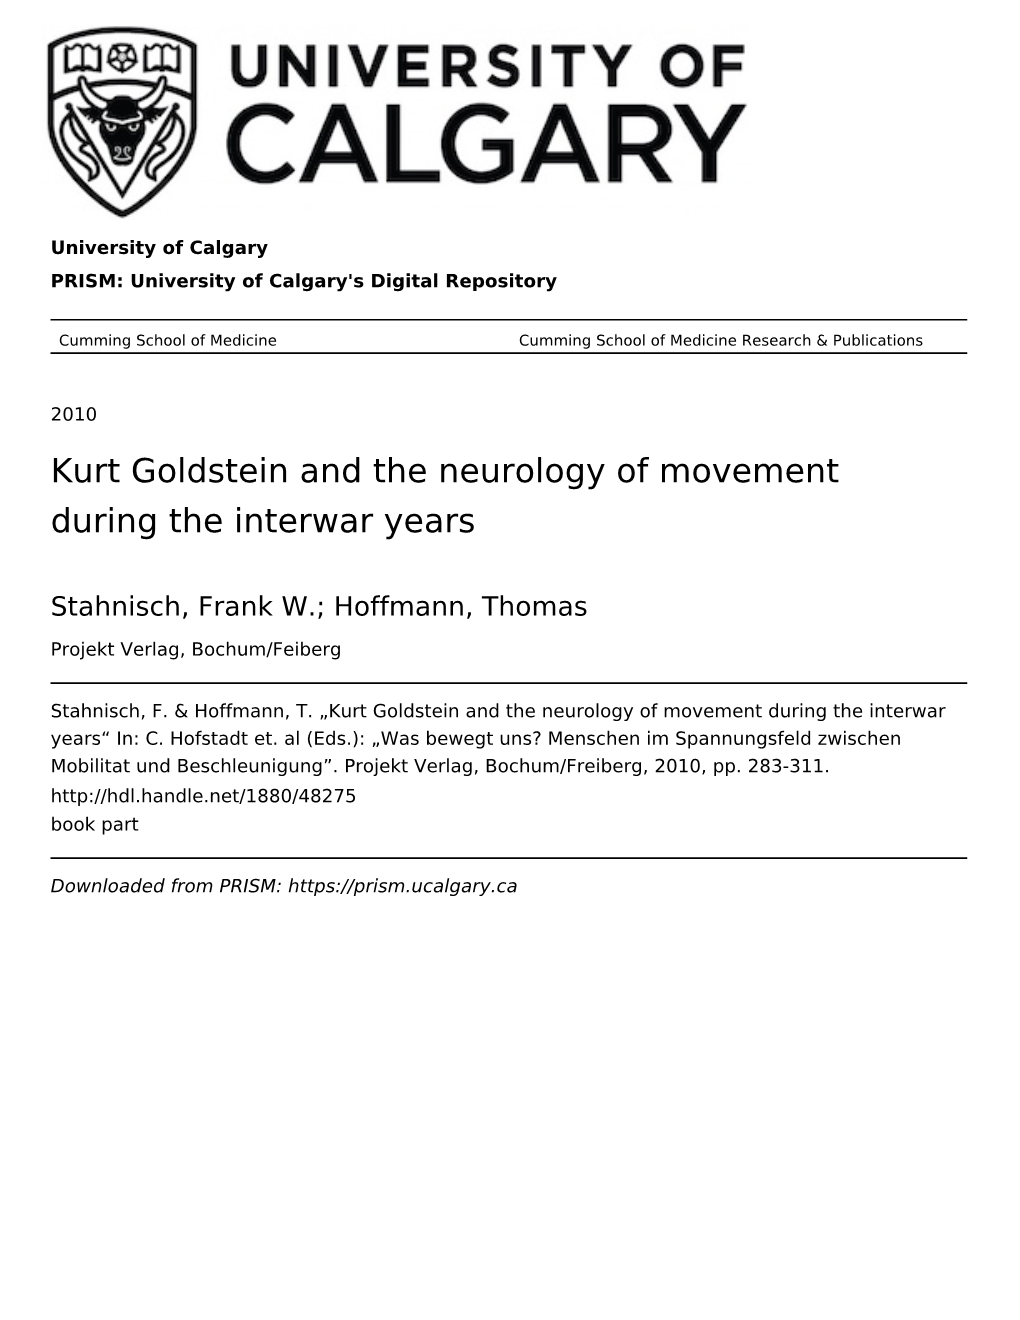 Kurt Goldstein and the Neurology of Movement During the Interwar Years